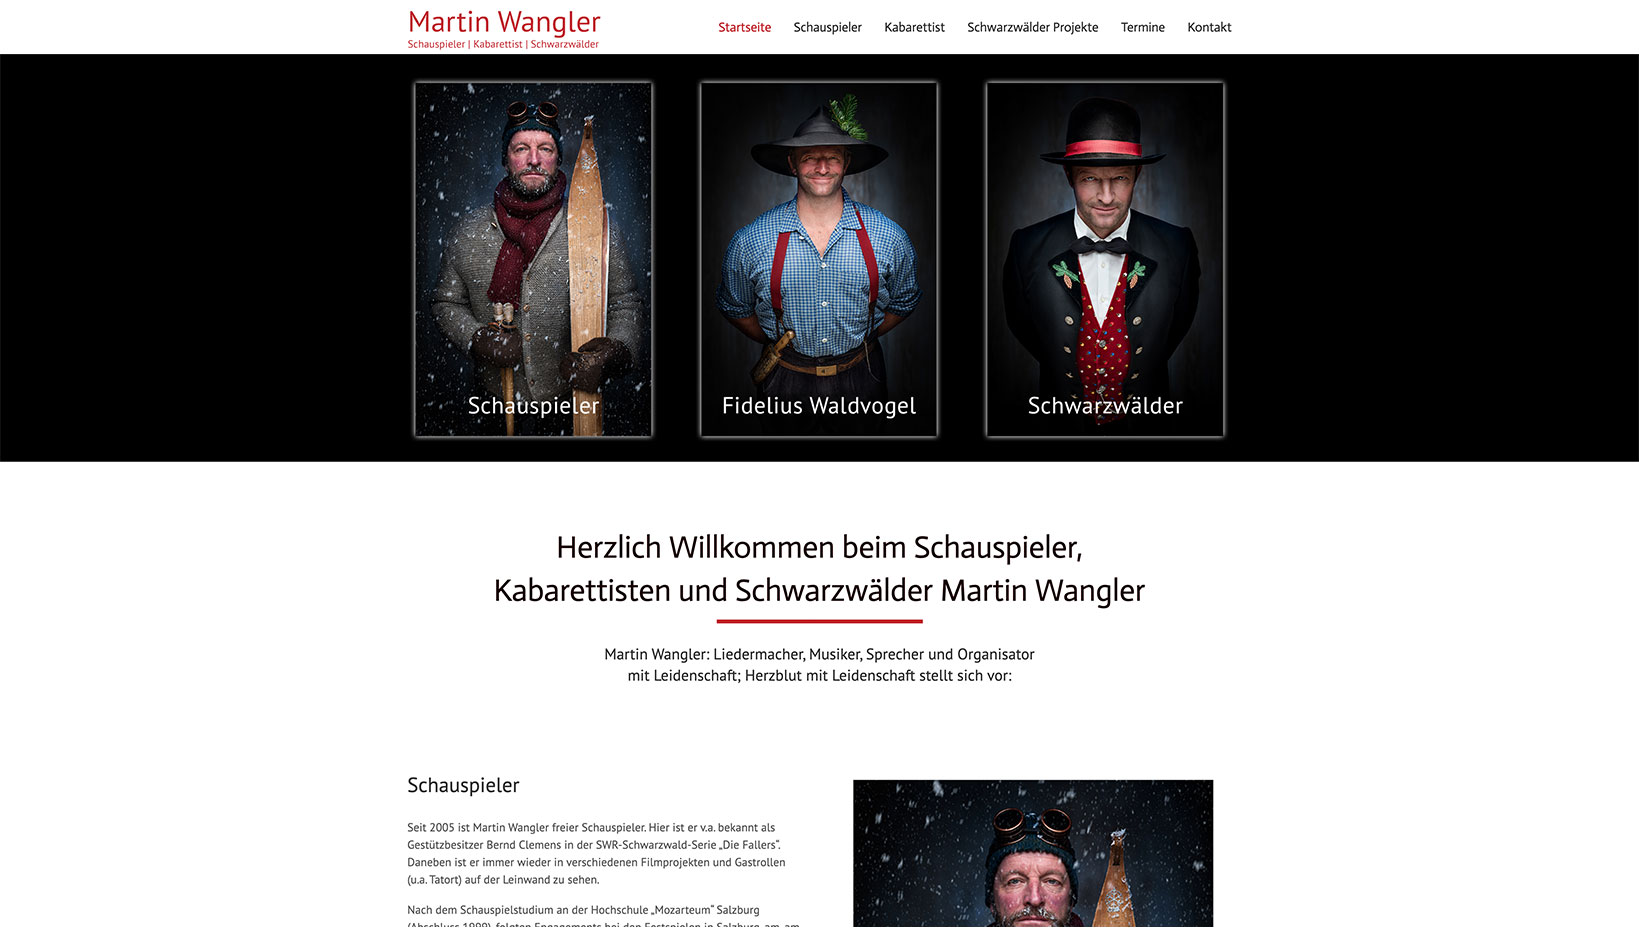 Referenz: Martin Wangler, Schauspieler und Kabarettist